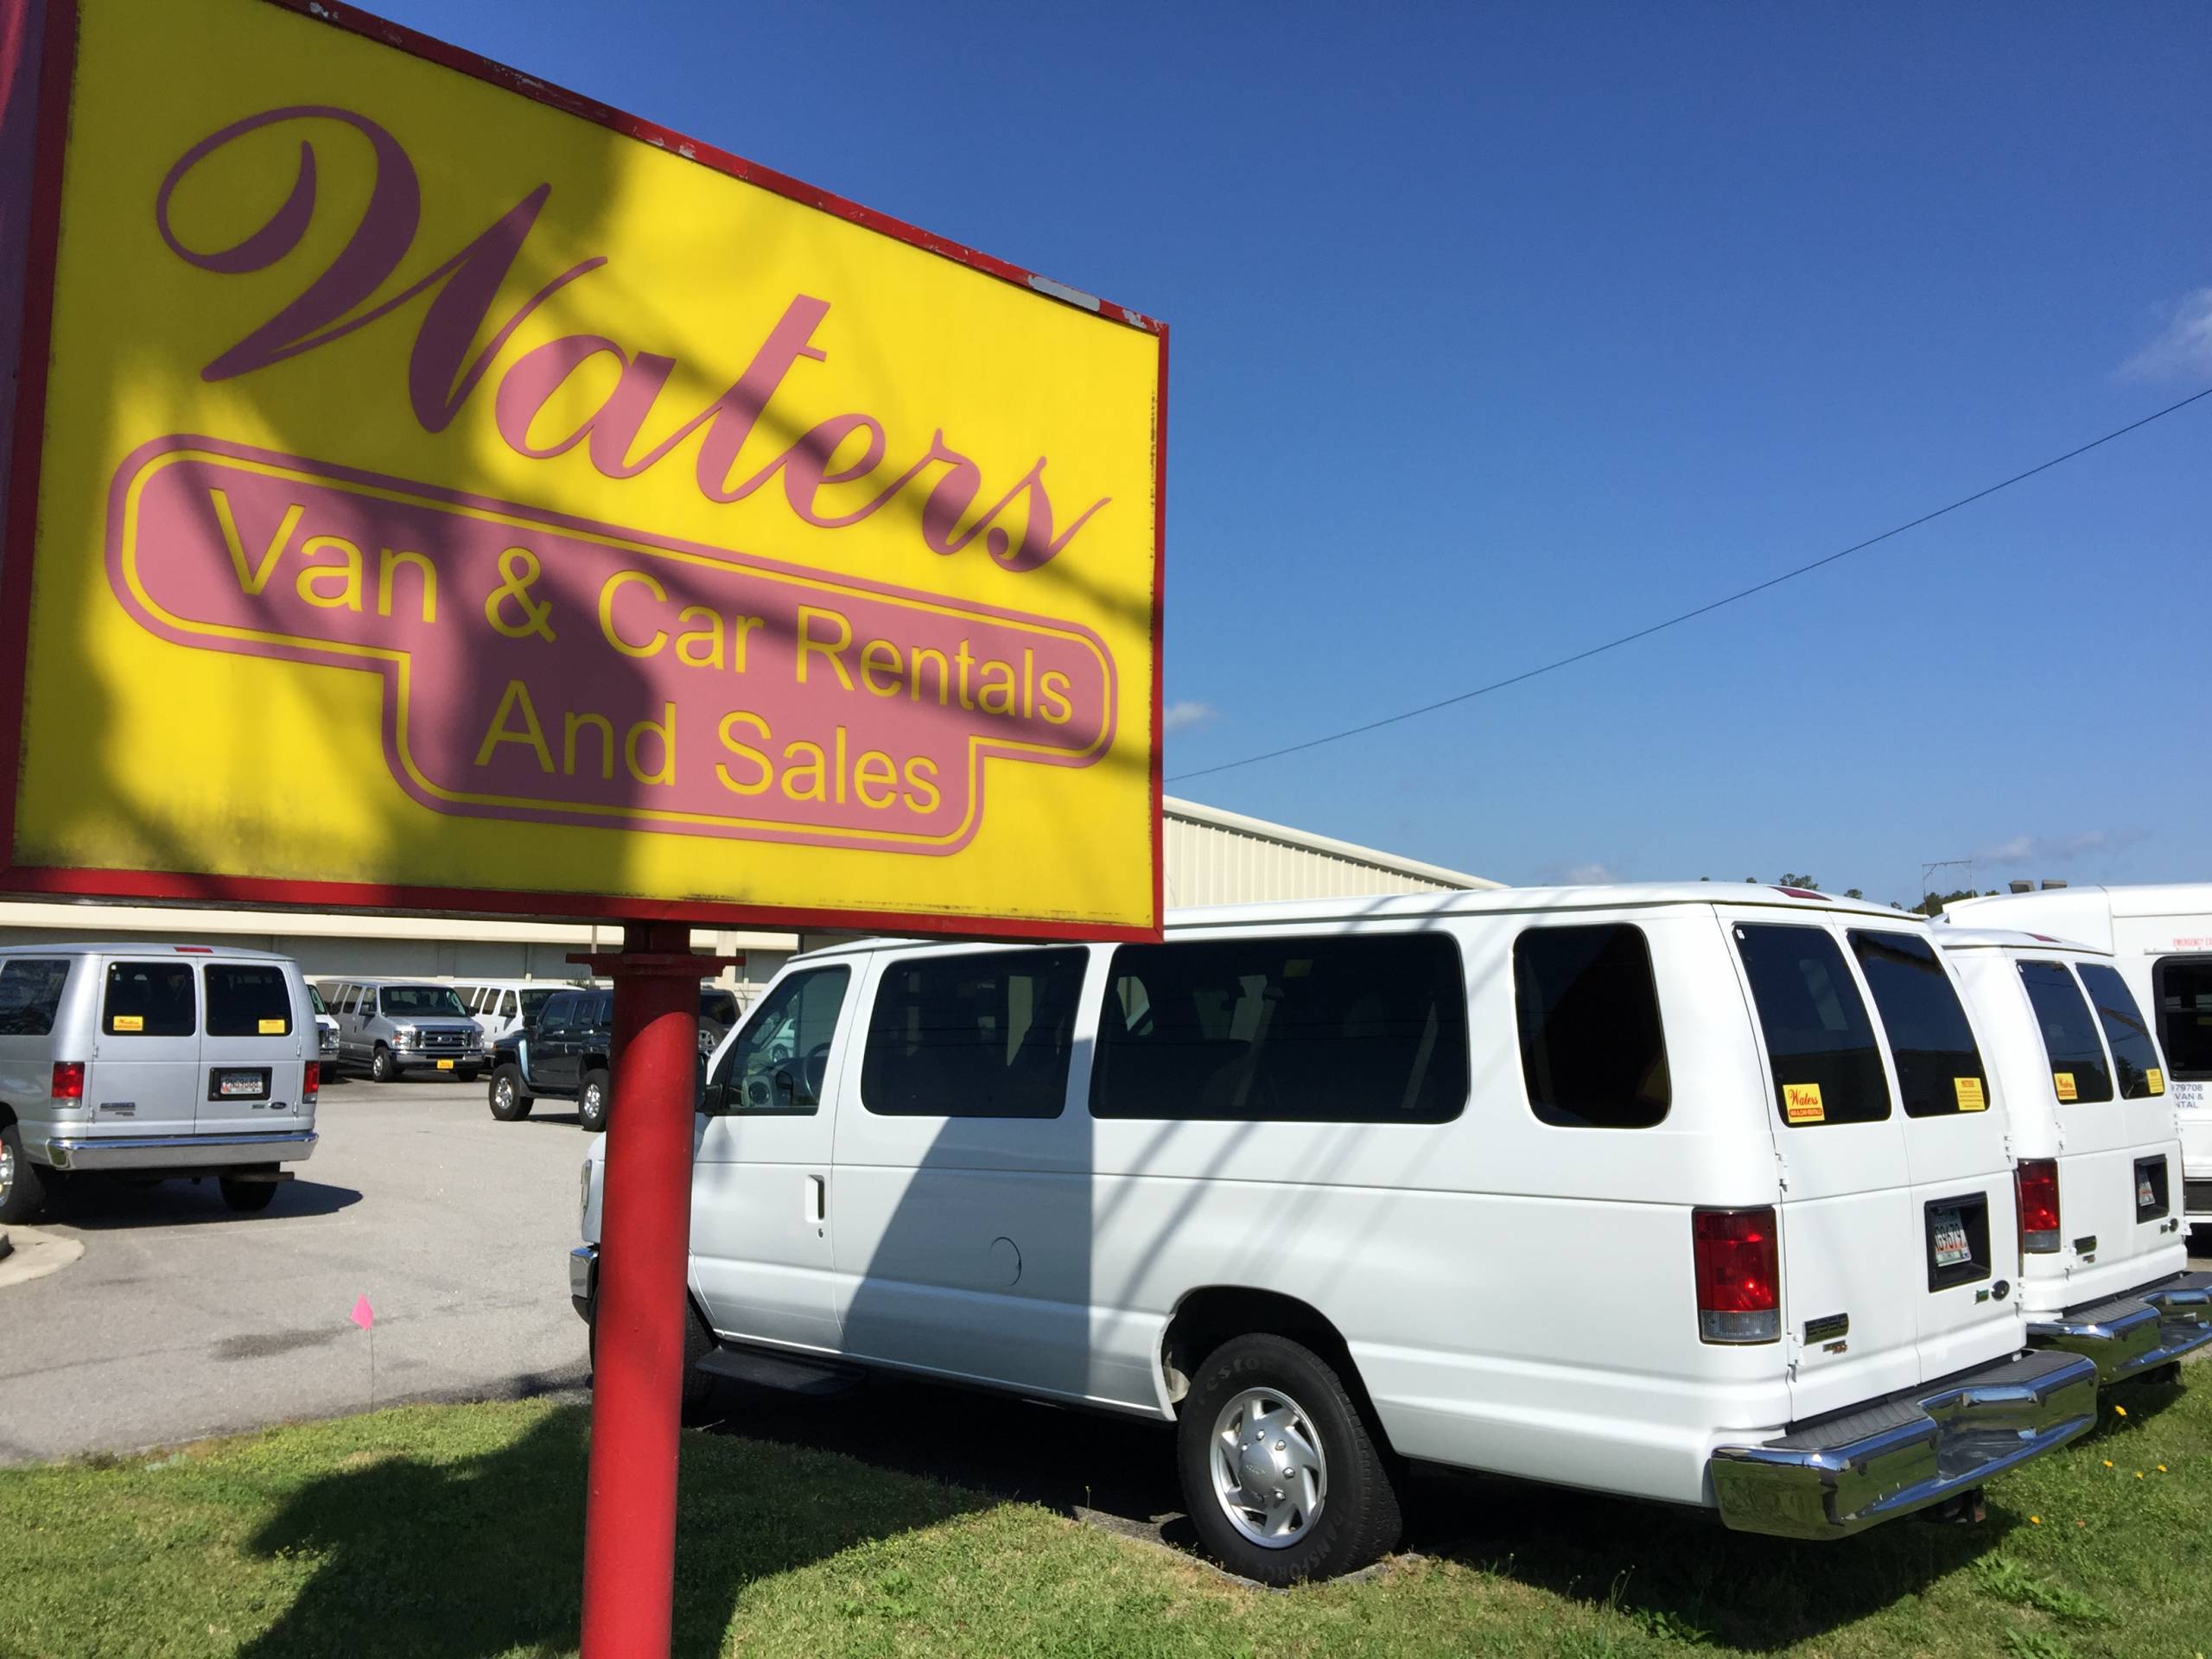 Waters Van & Car Rentals & Sales Augusta Georgia